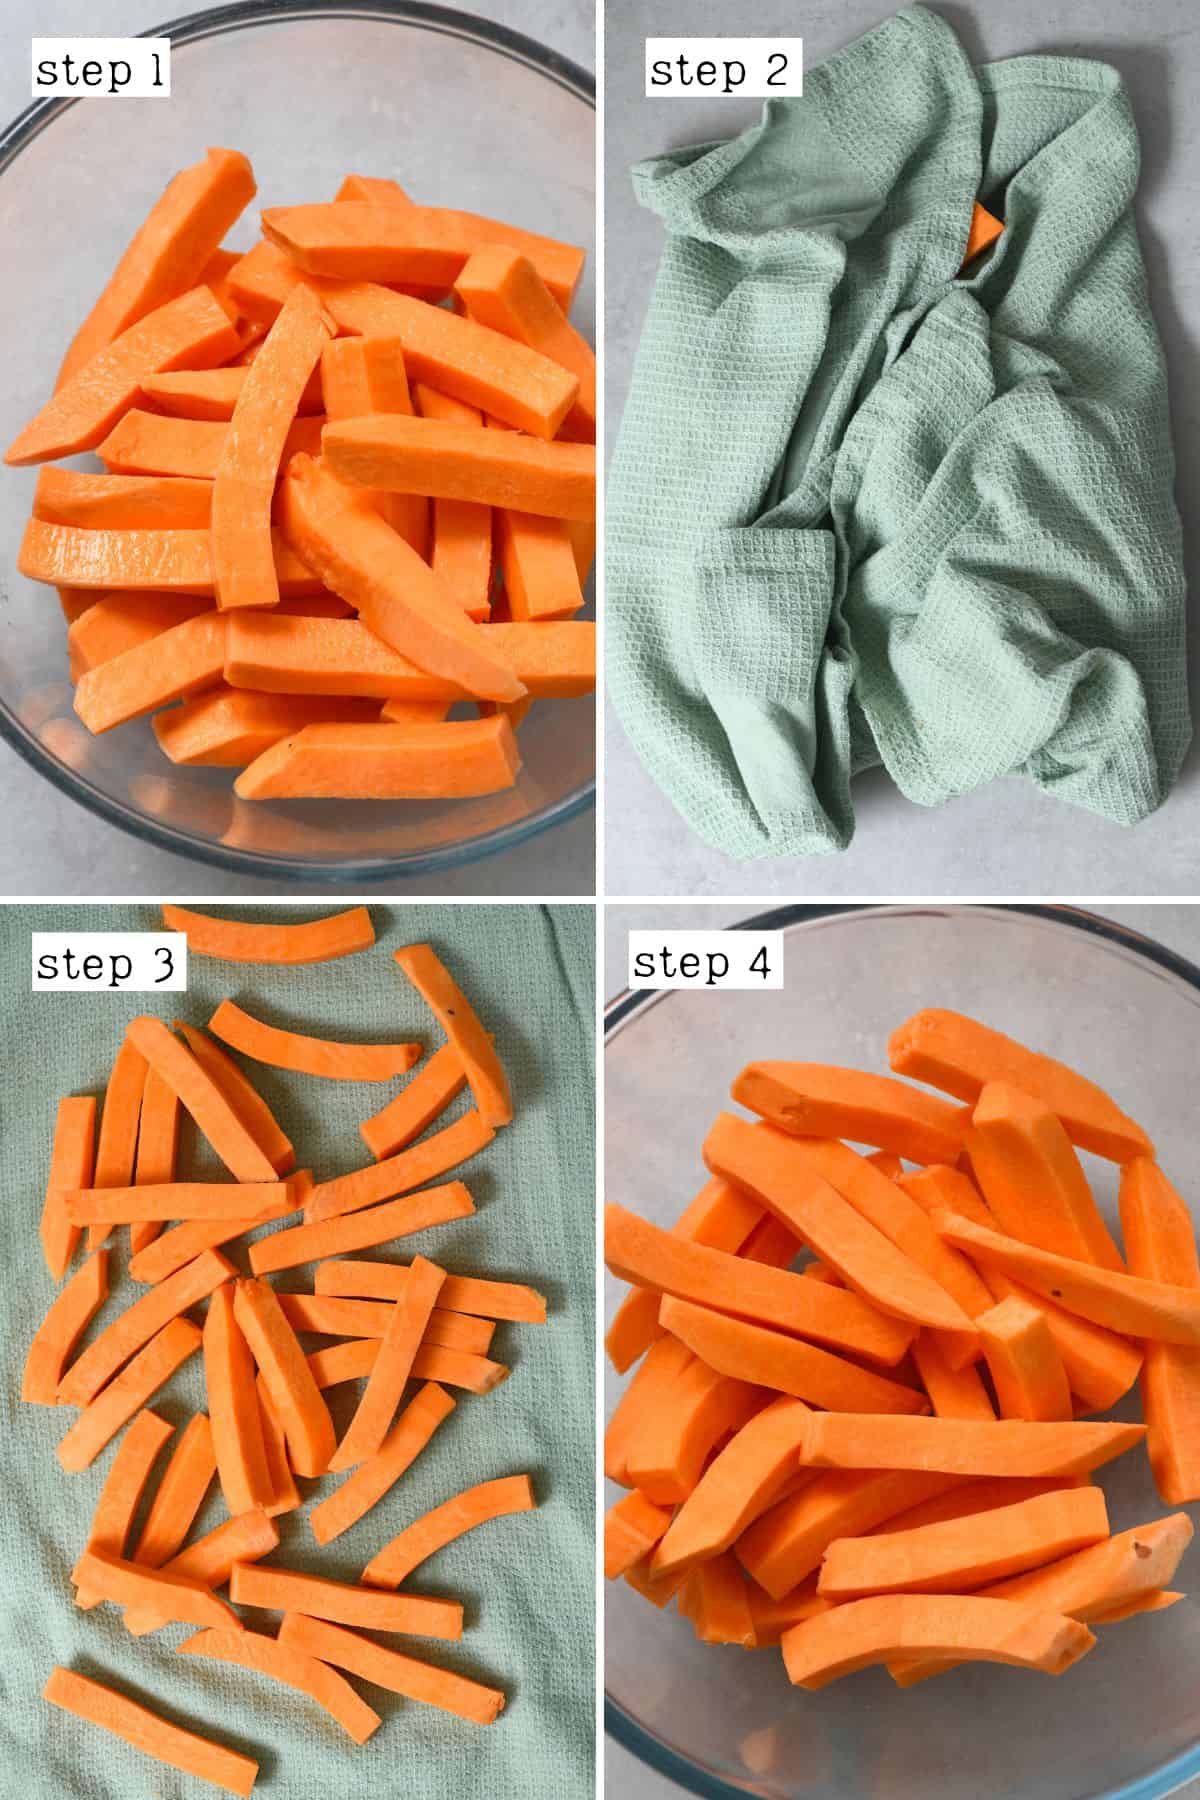 Steps for drying sweet potato sticks